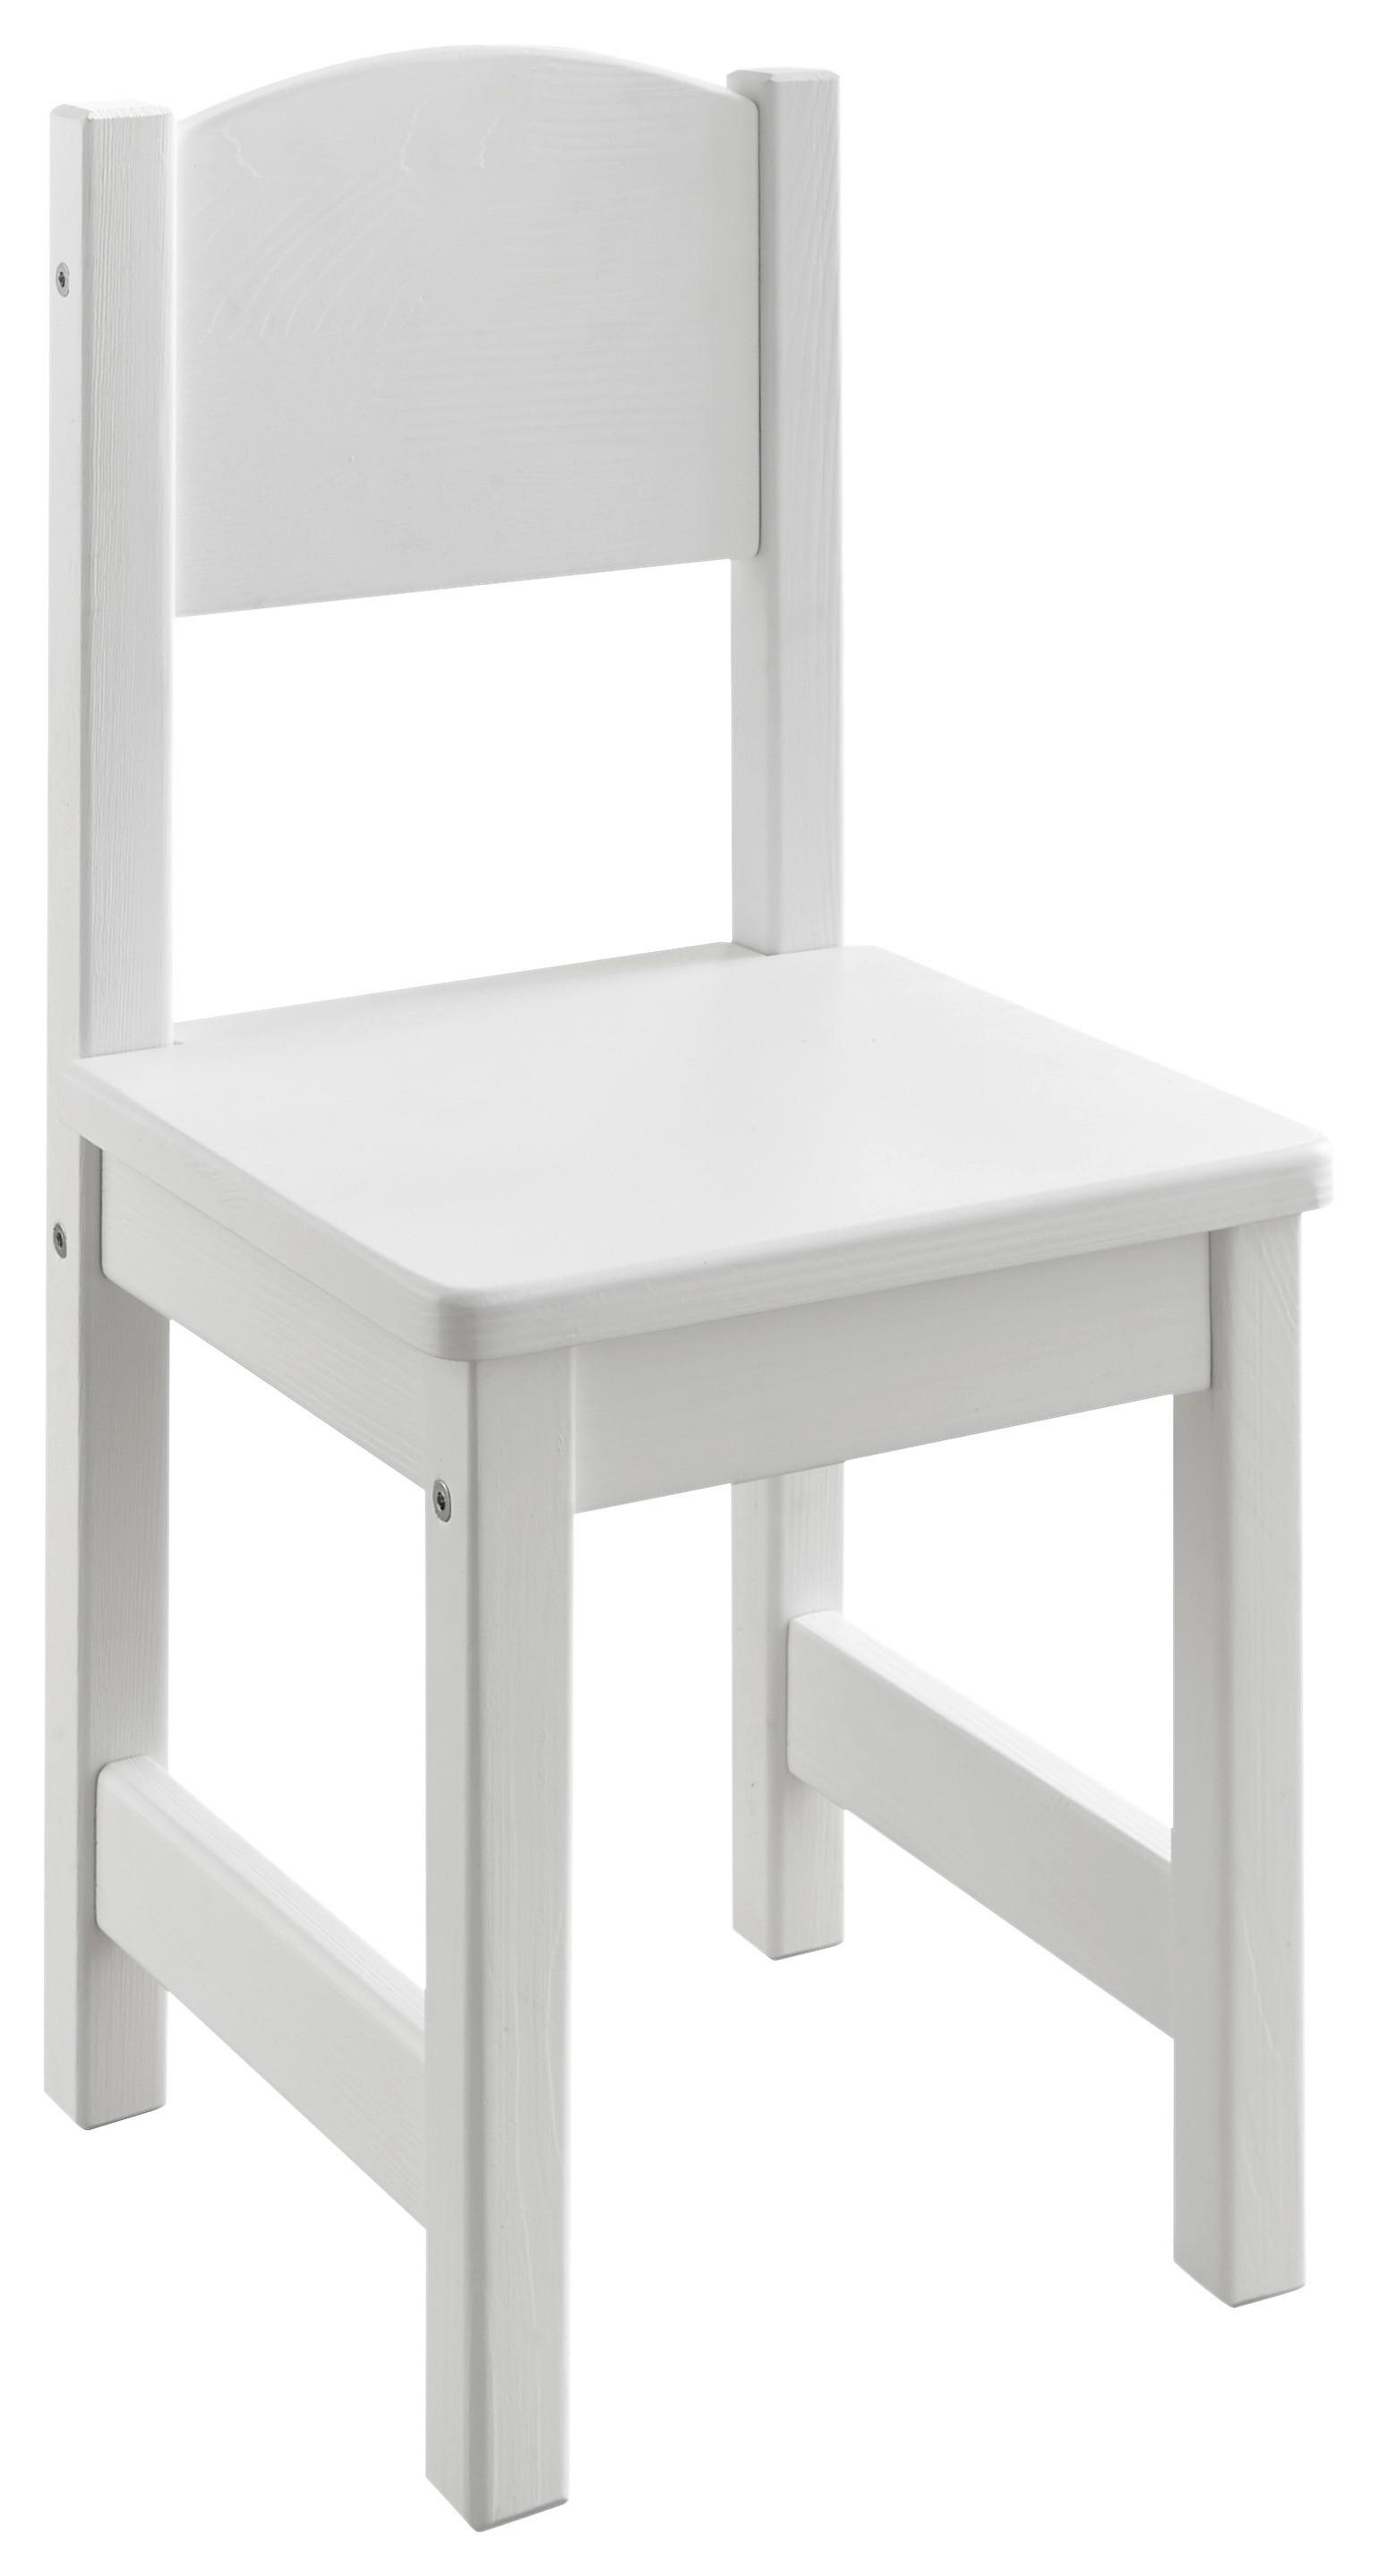 Dětská Židle Felix - bílá, Konvenční, dřevo (28/32-60/28cm) - MID.YOU